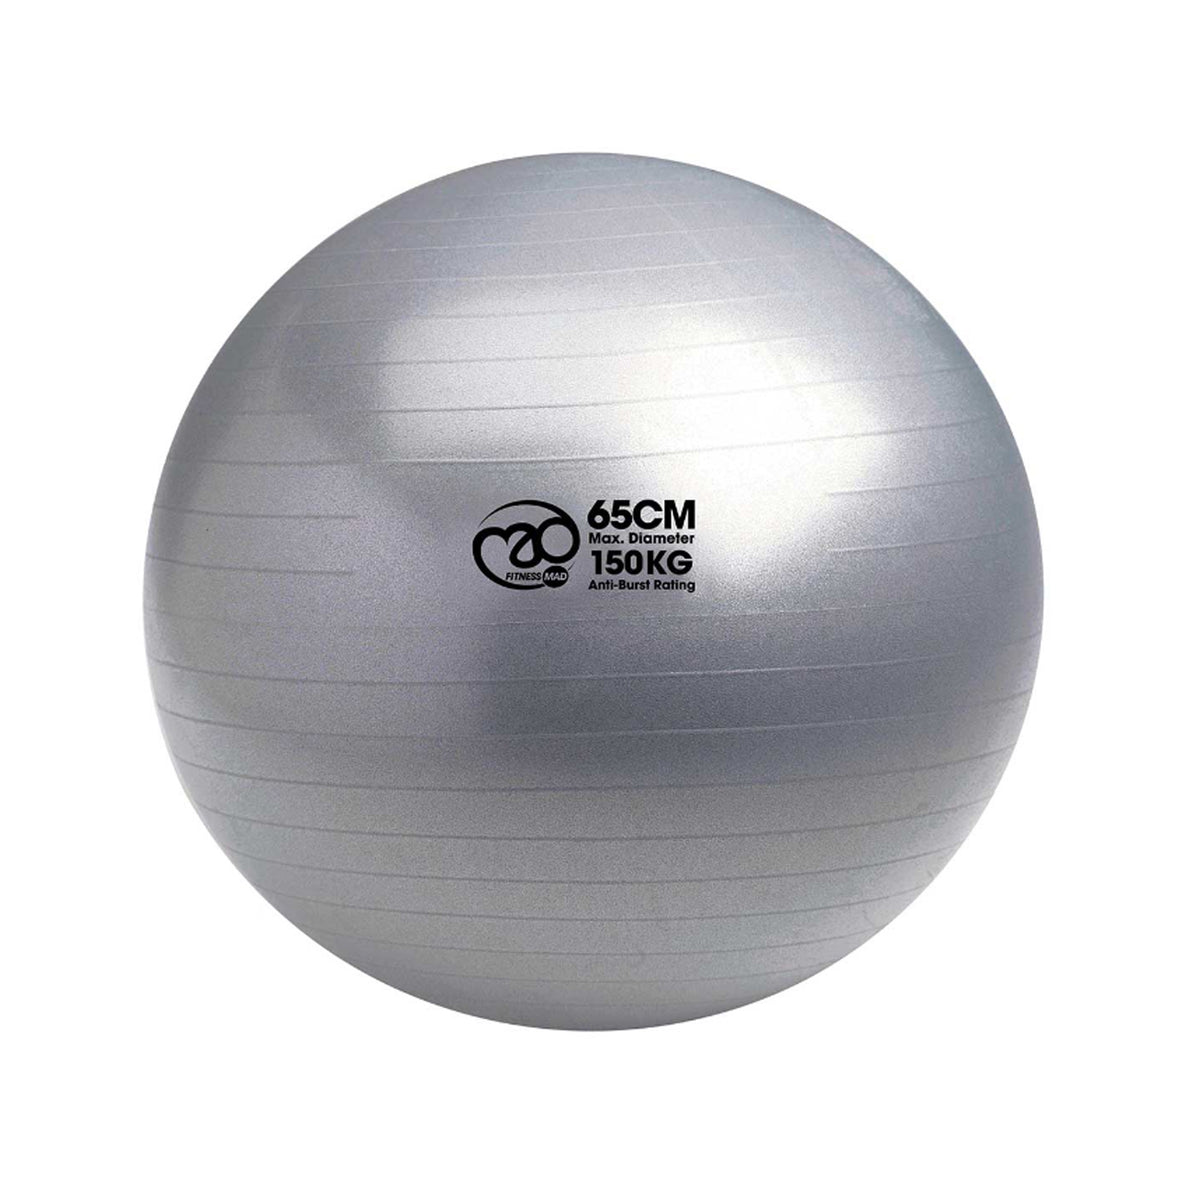 Fitness Mad 150kg Anti-Burst Swiss Ball & Pump - 65cm